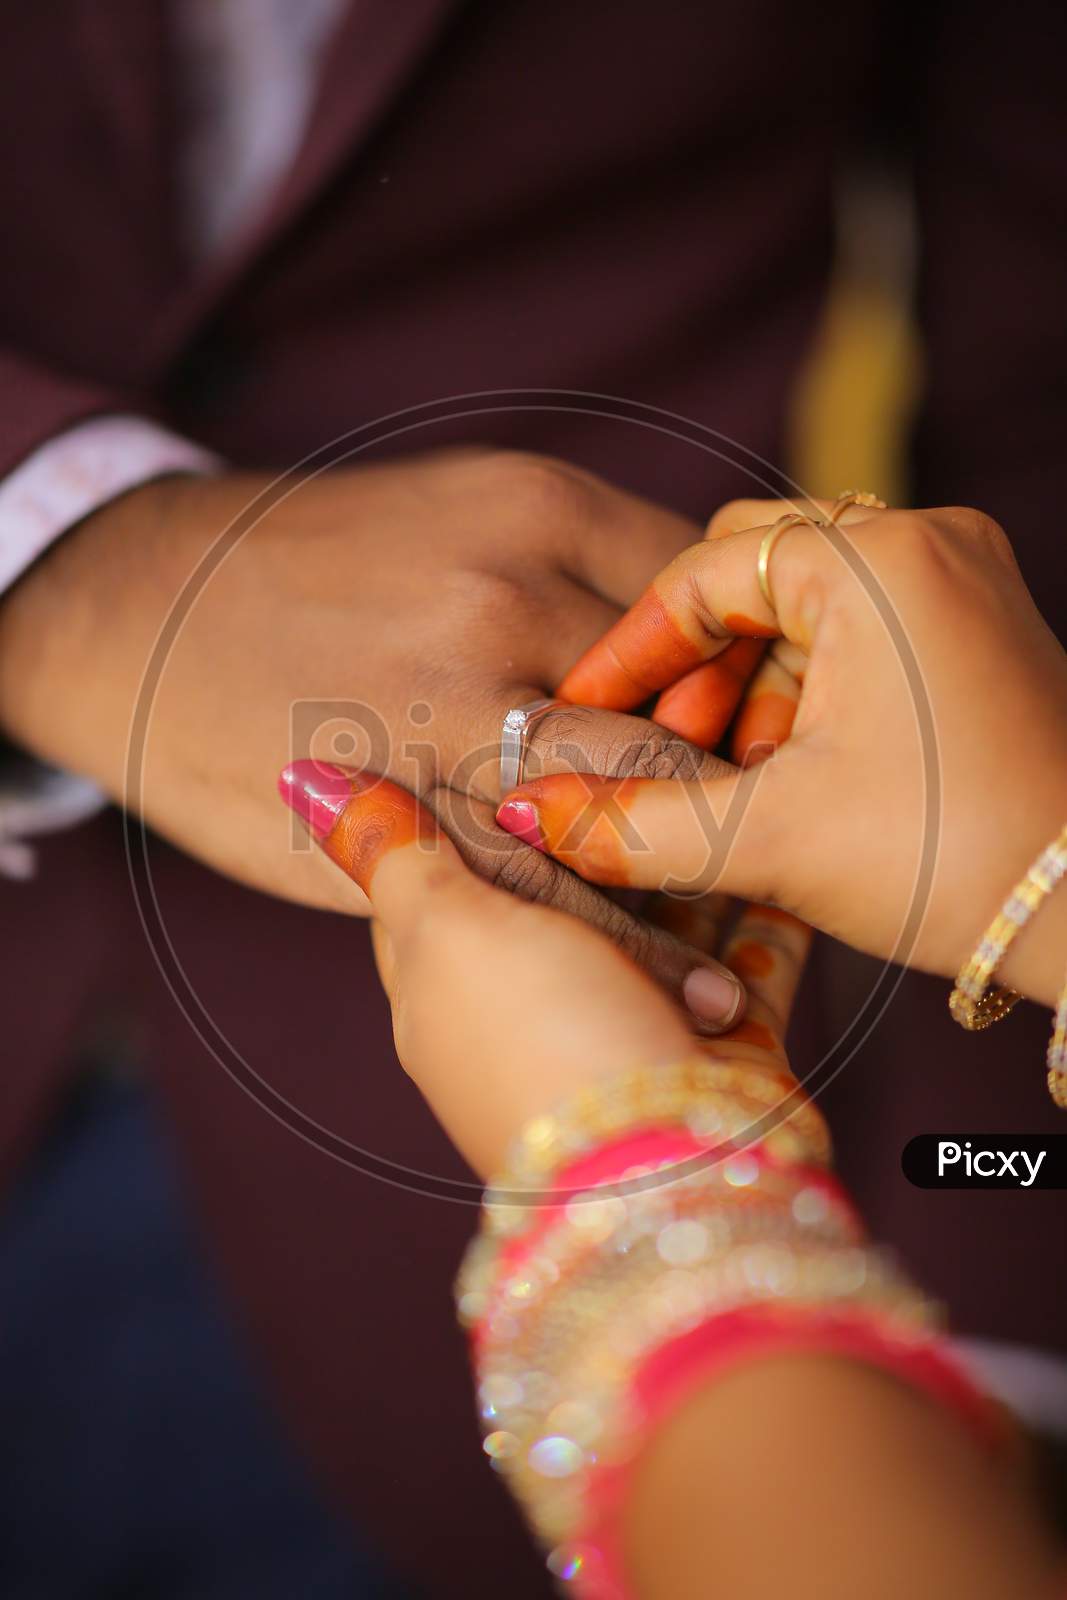 Indian bride putting ring during wedding